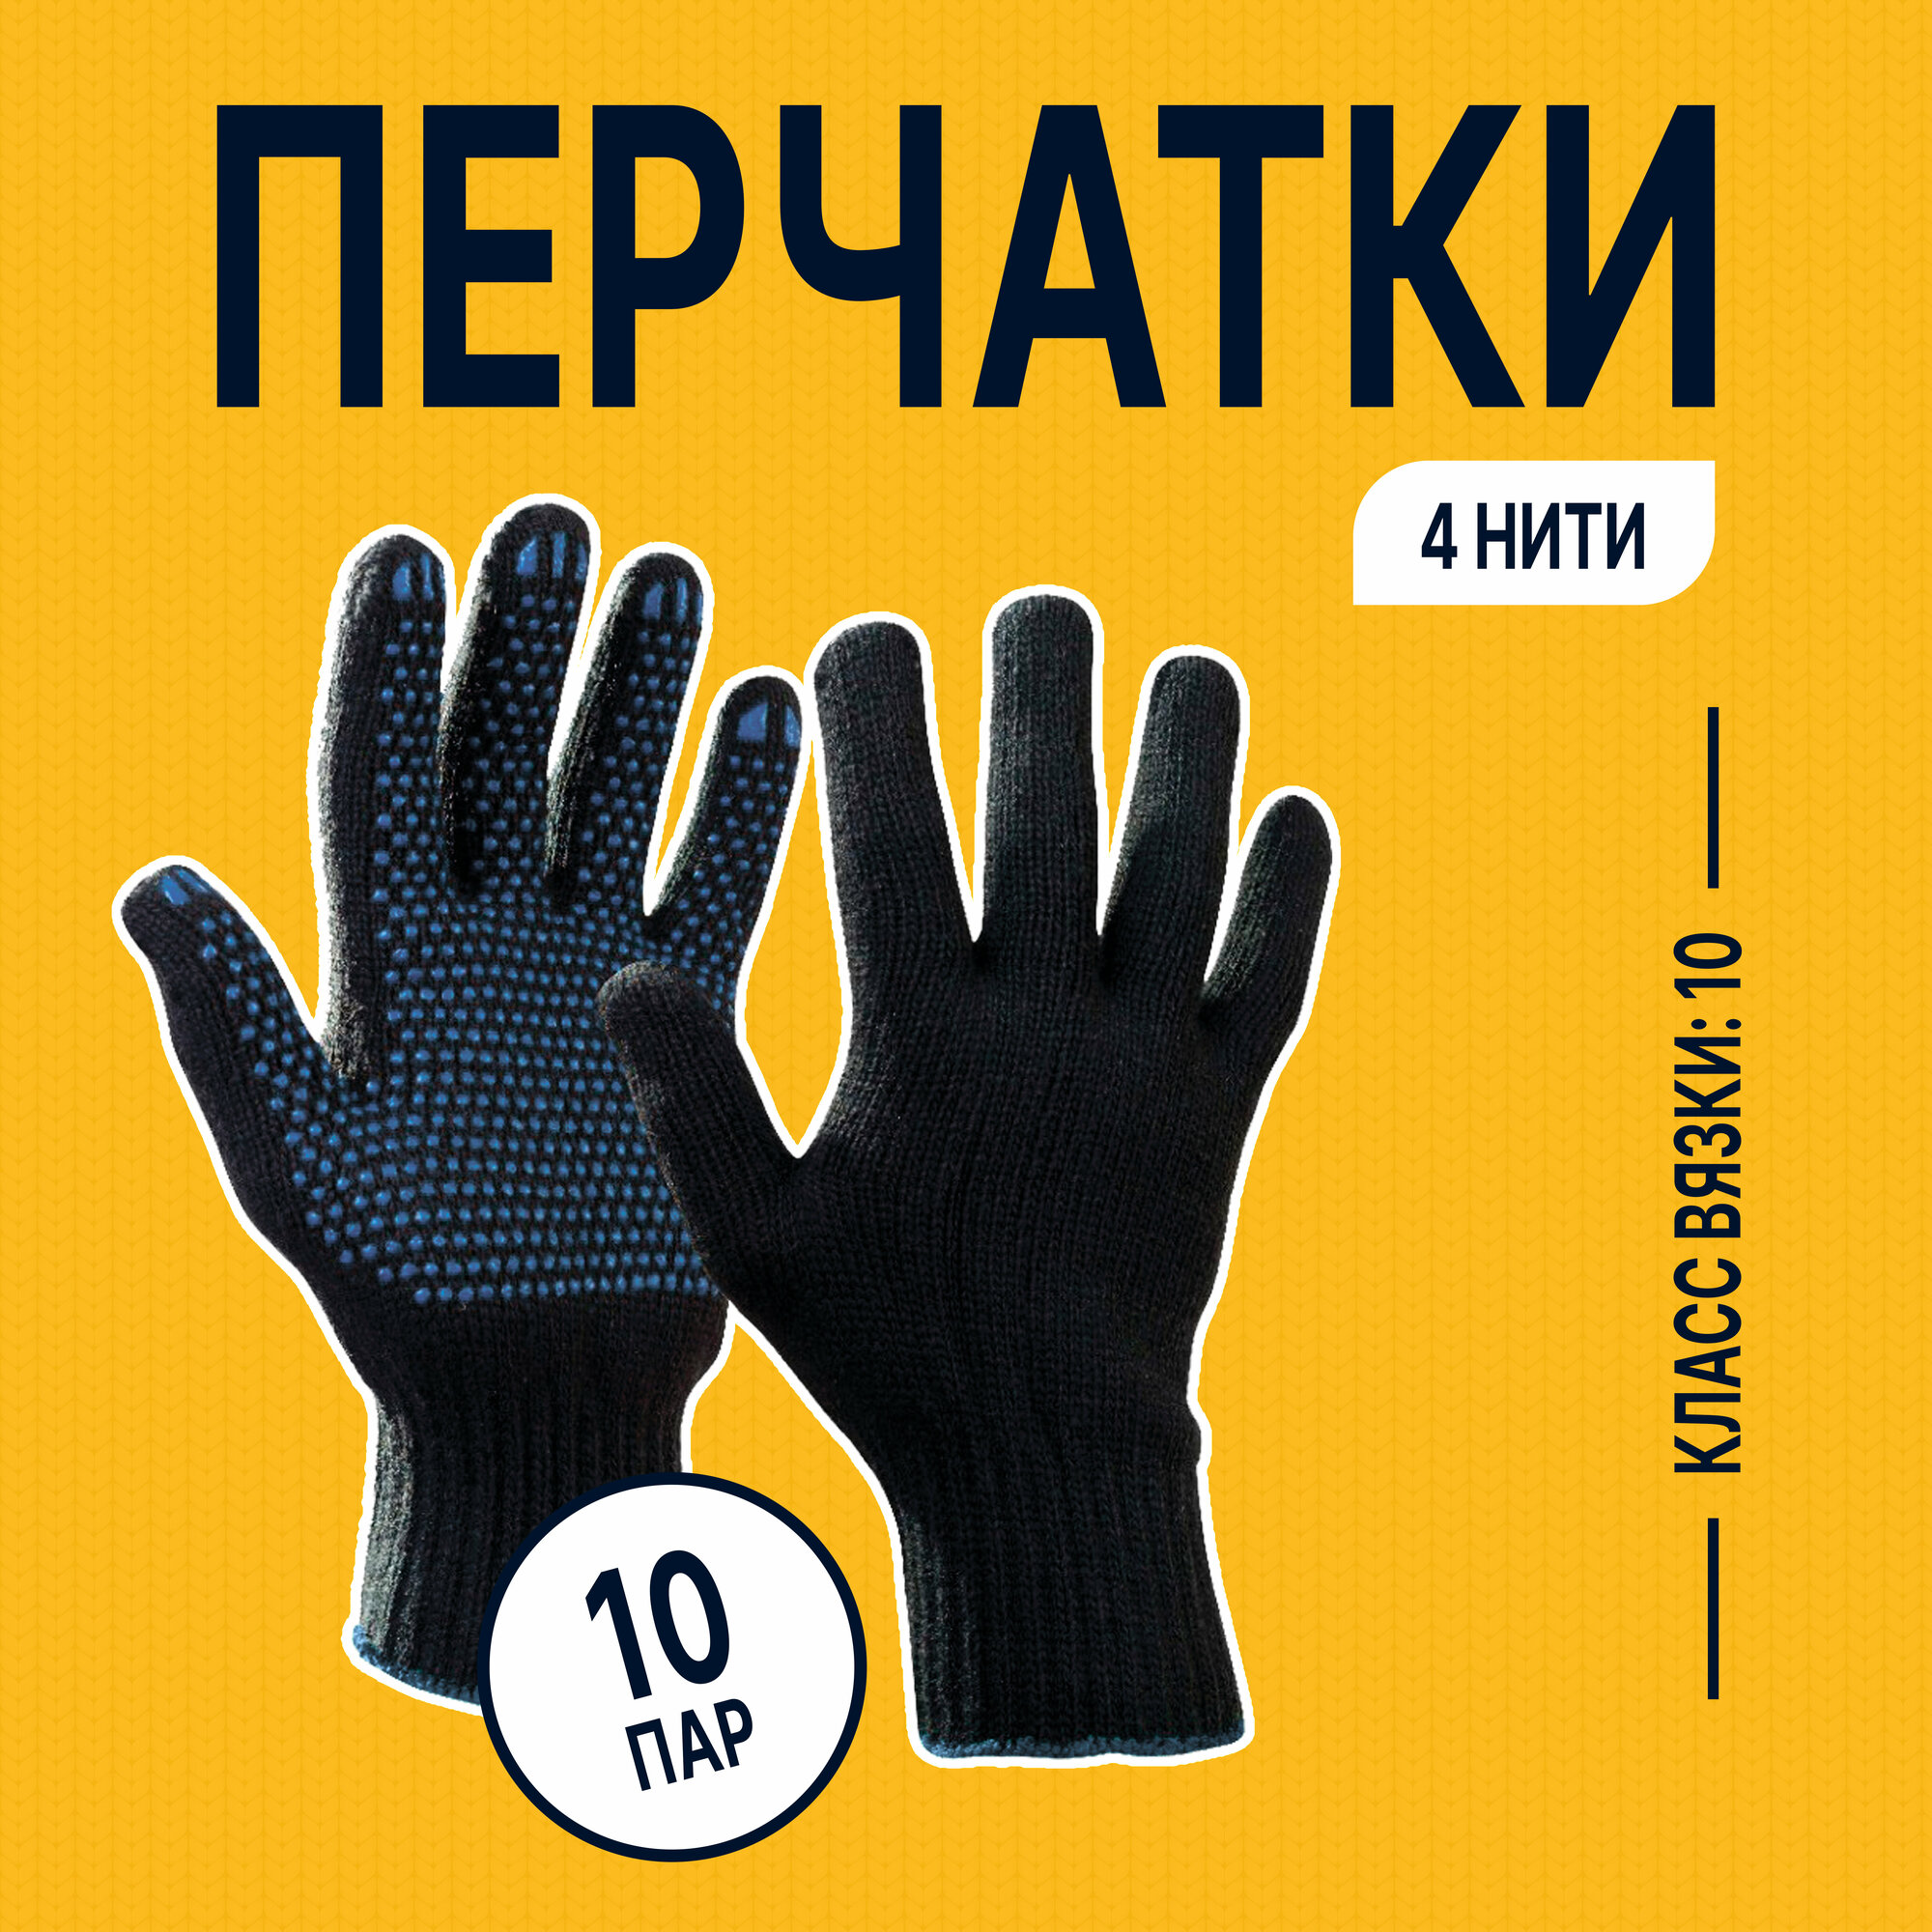 Перчатки рабочие ХБ (100% хлопок) "Альянс производителей" эконом с покрытием ПВХ черные 10 ПАР В упаковке